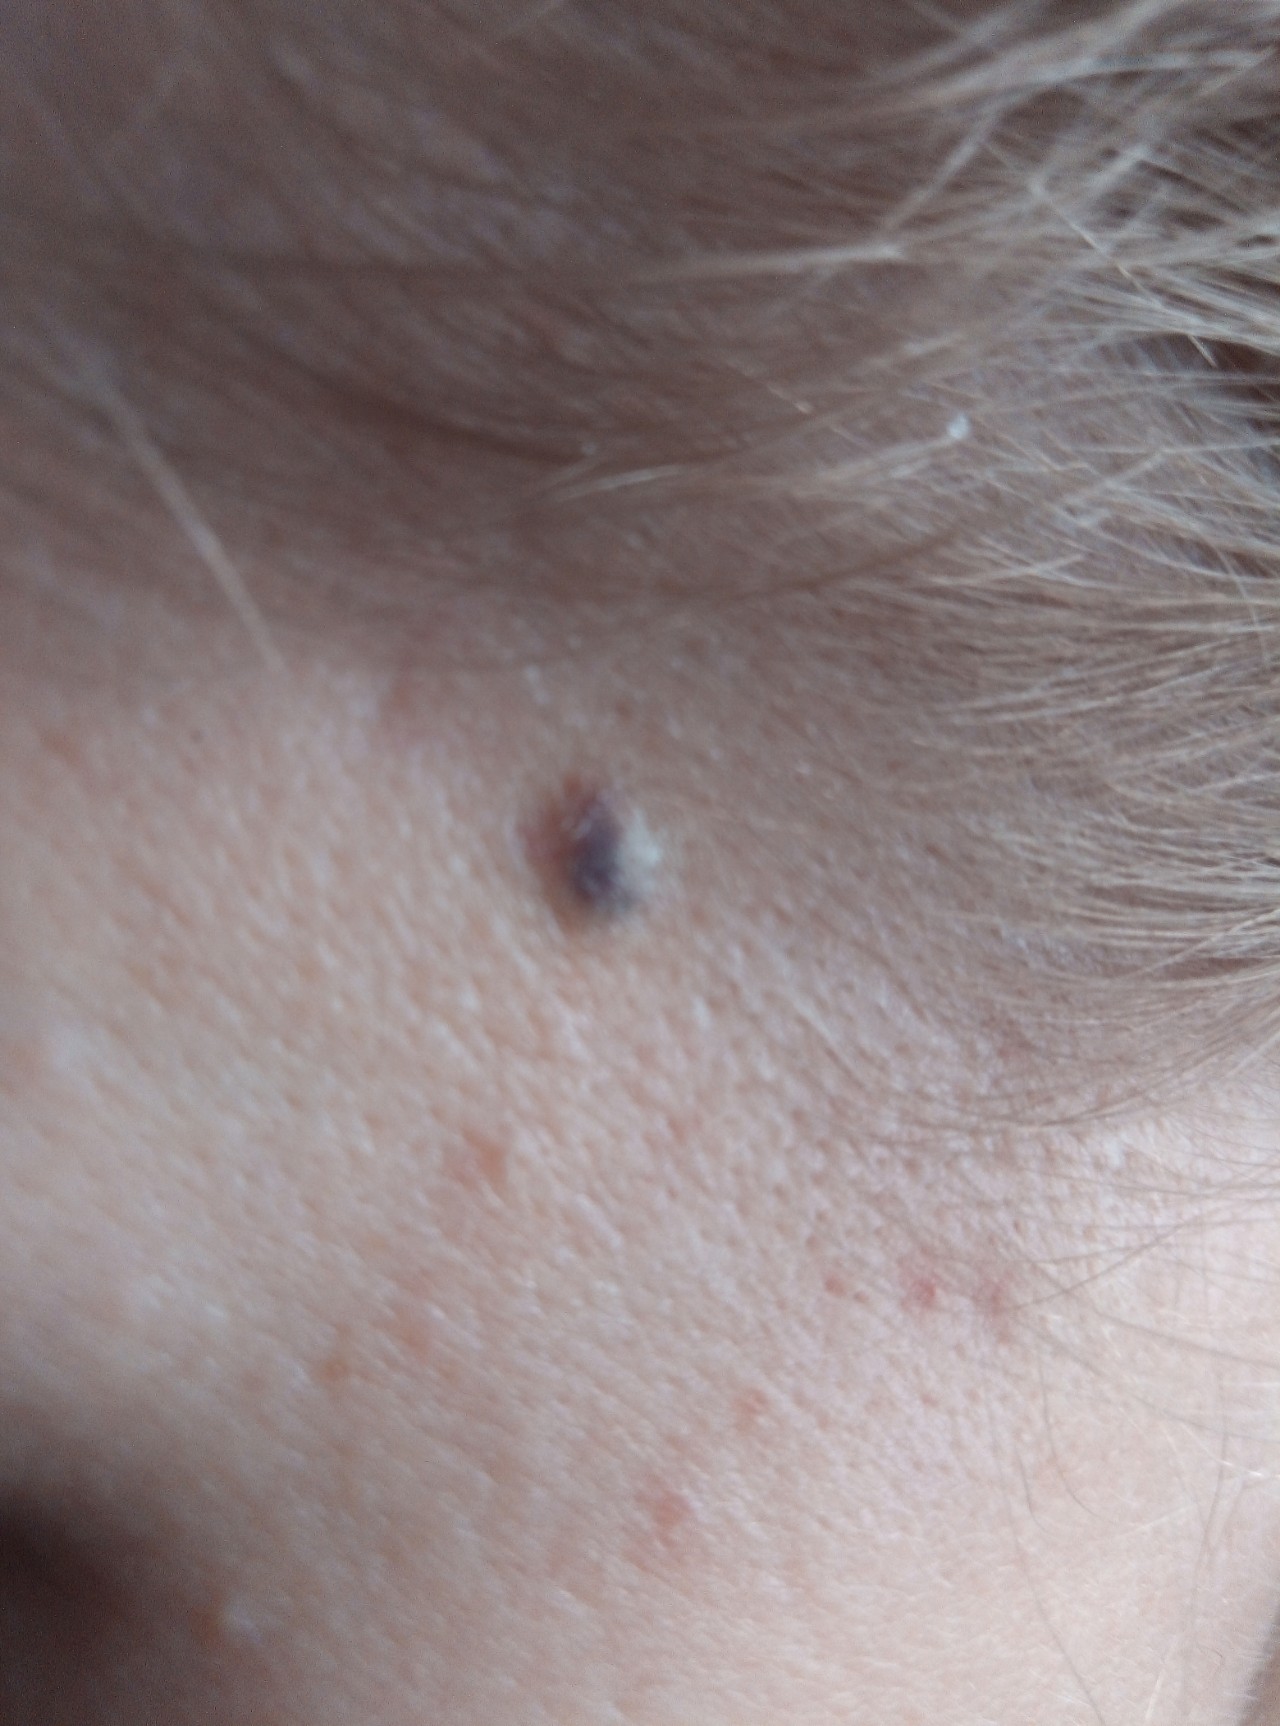 Темно синее, практически чёрное пятно под кожей - Вопрос дерматологу - 03  Онлайн